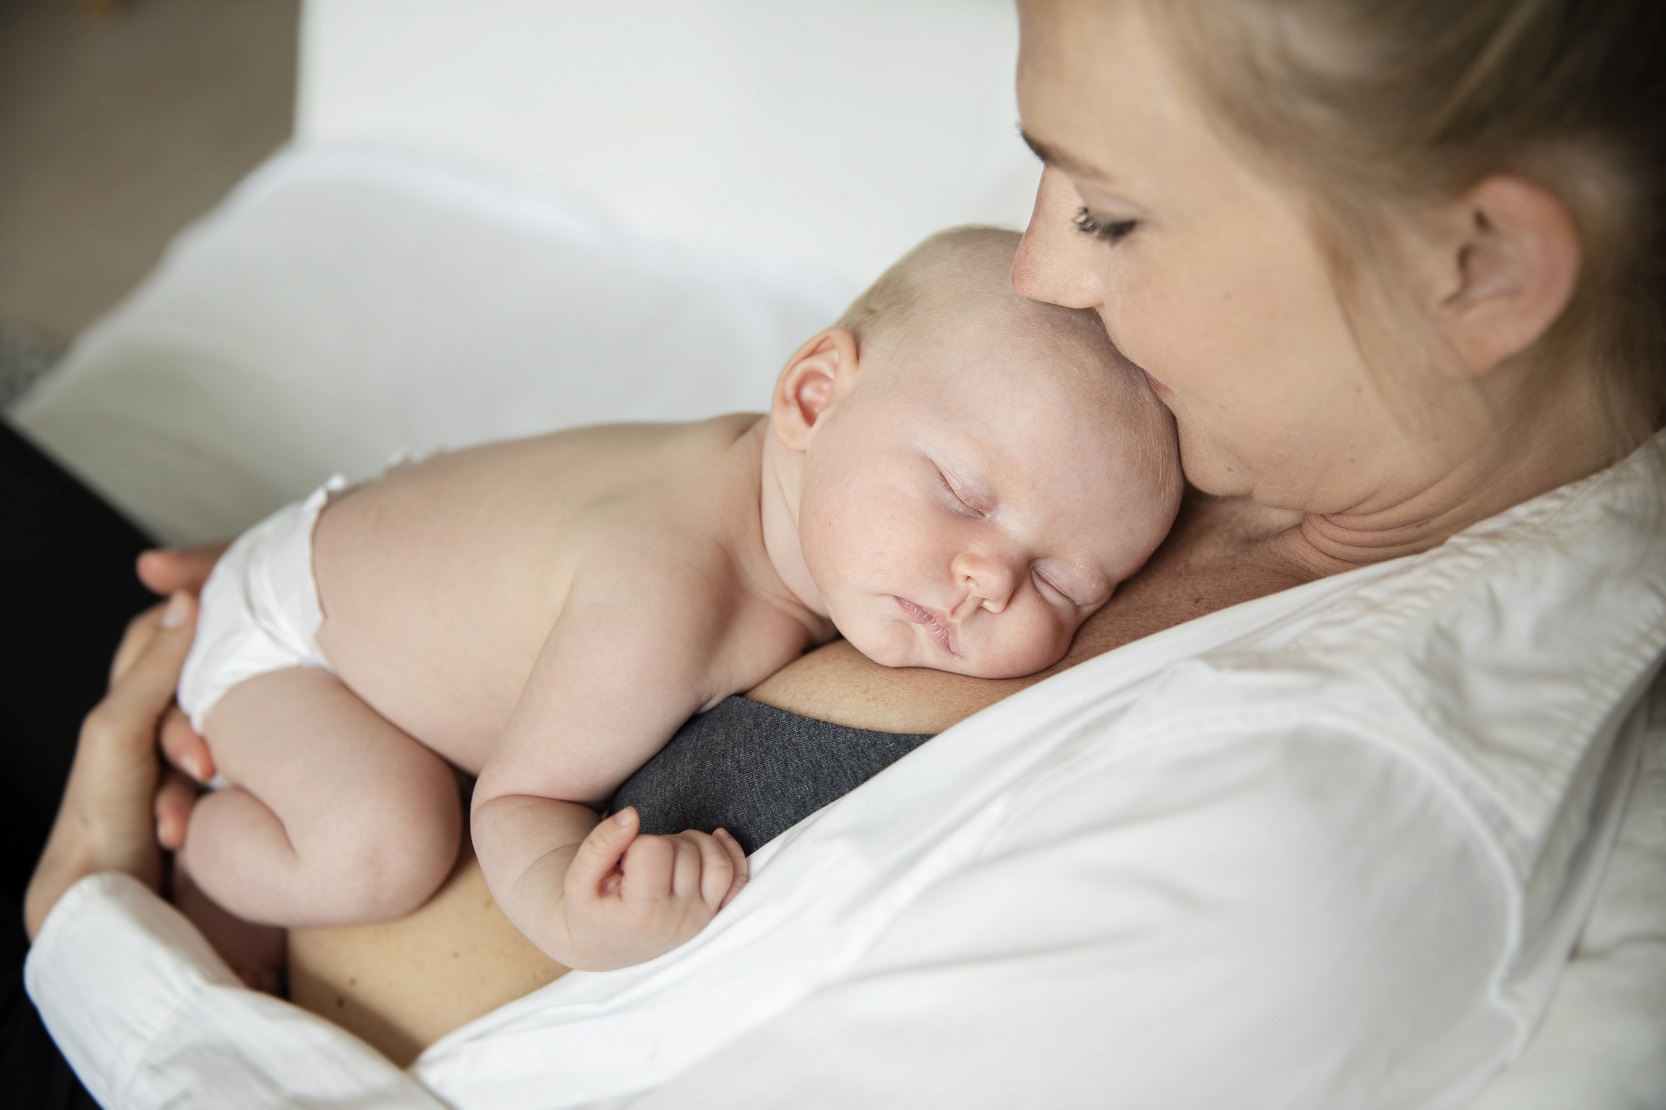 Ett barn i två månaders åldern vilar hud mot hud mot sin mammas bröst med slutna ögon endast iklädd blöja. Mamman har uppknäppt blus.